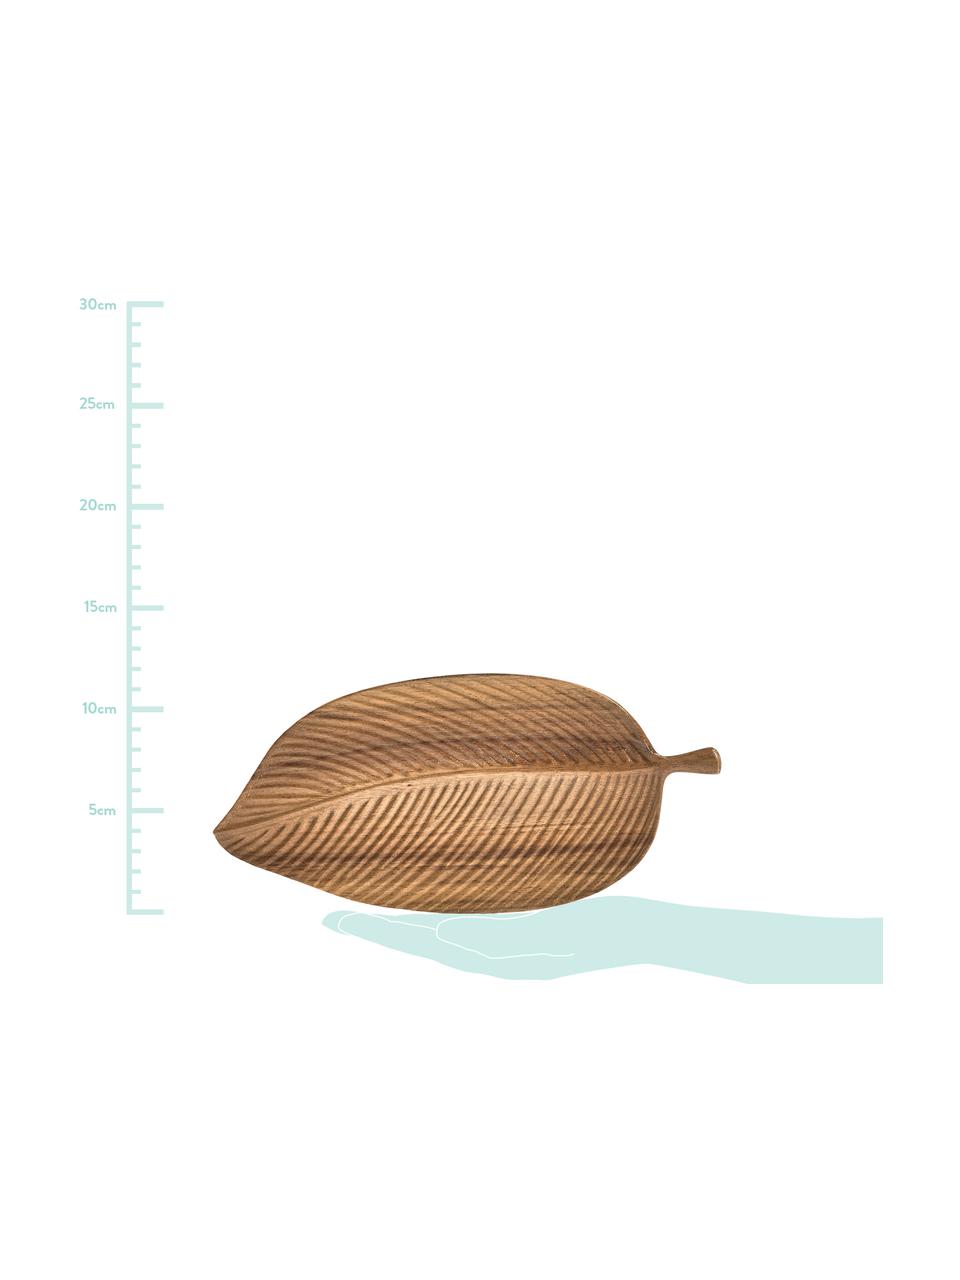 Servírovací talíř z akátového dřeva ve tvaru listu Disha, různé velikosti, Akácie